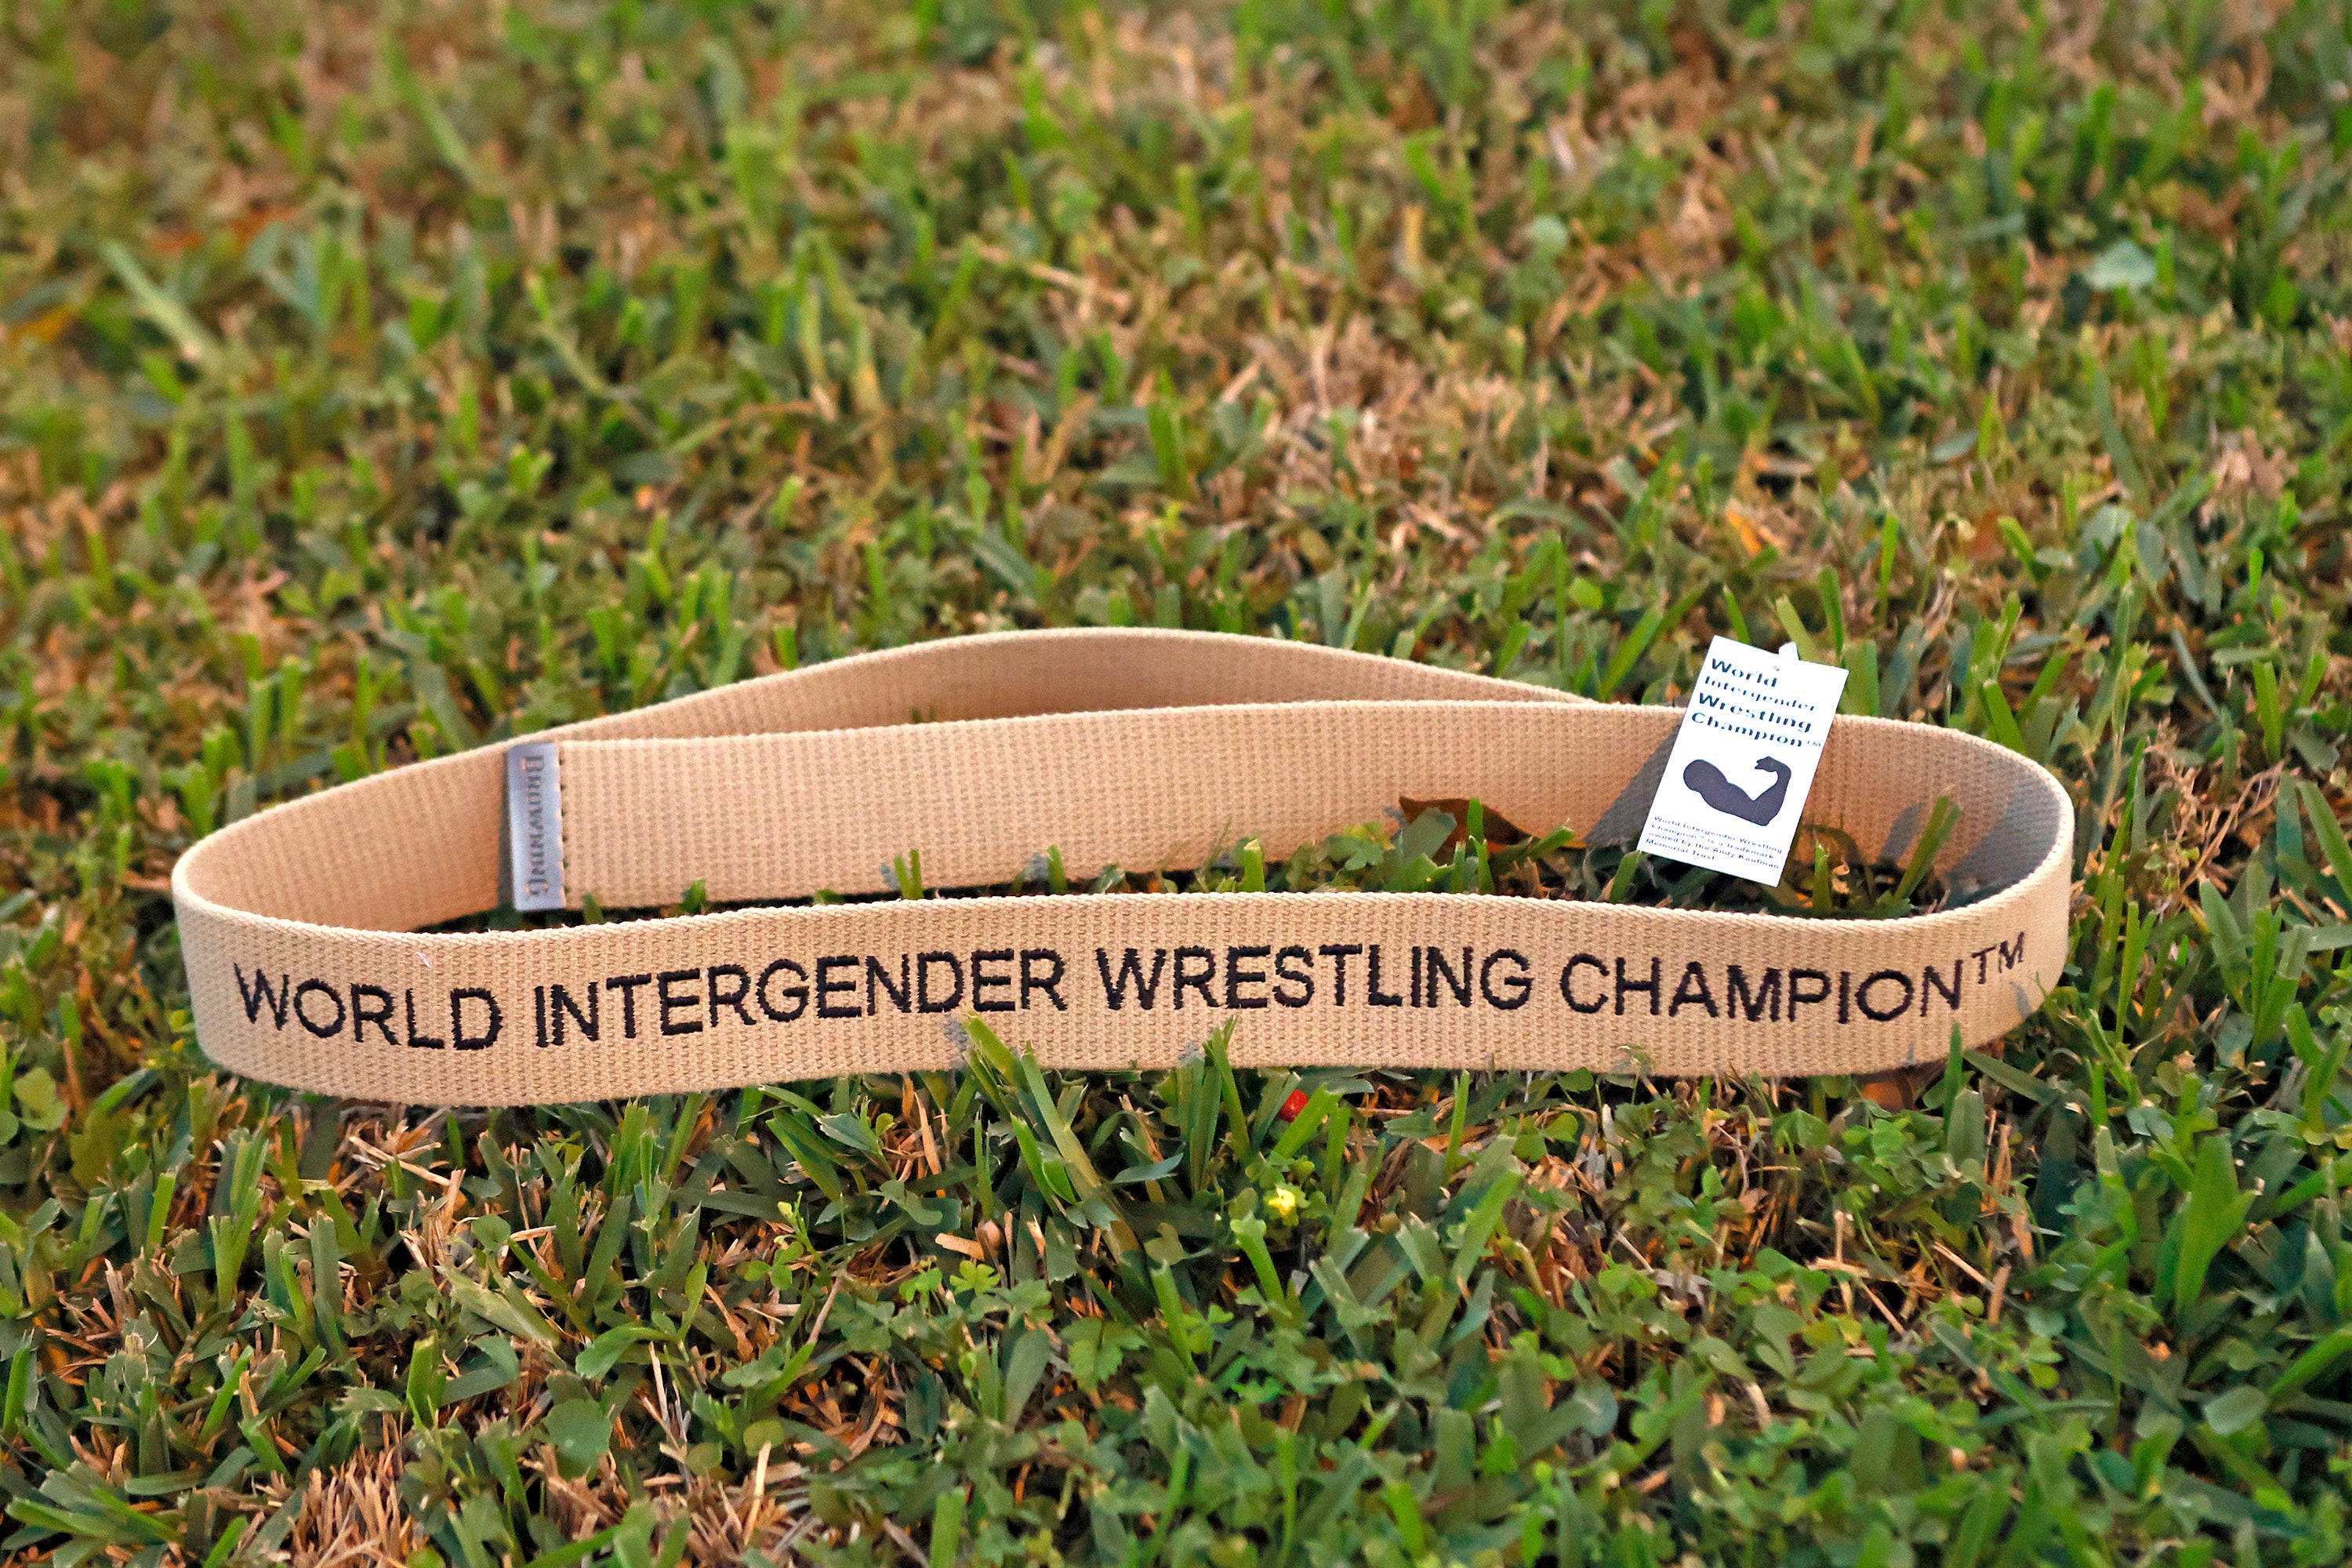 World Intergender Wrestling Champion™ belt